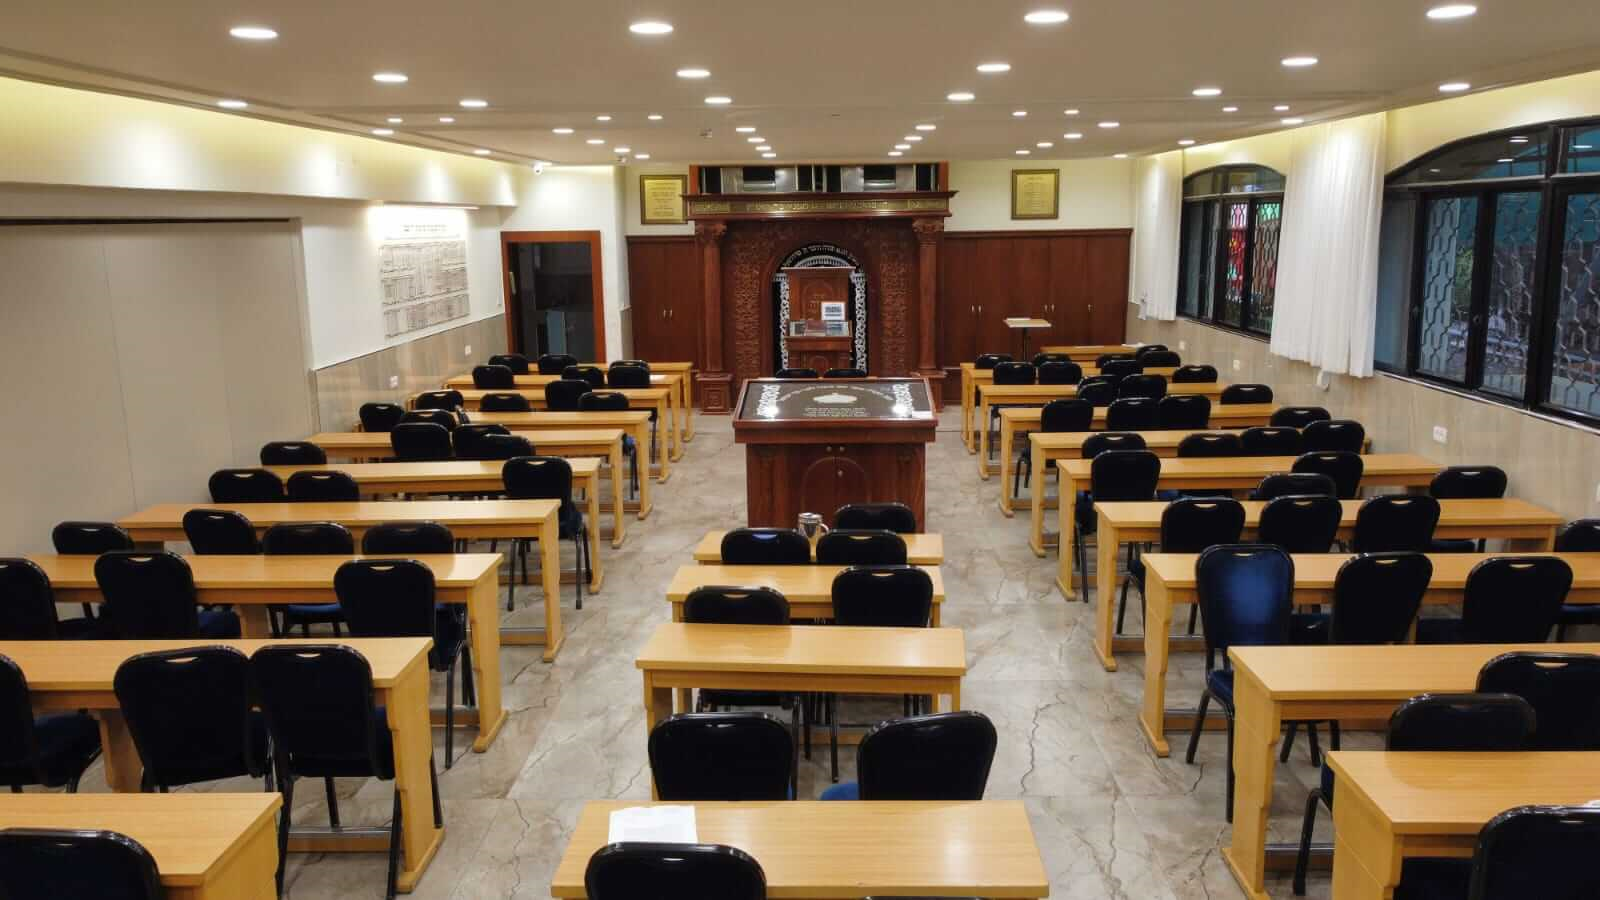 אולם בית הכנסת שבבית בגנו